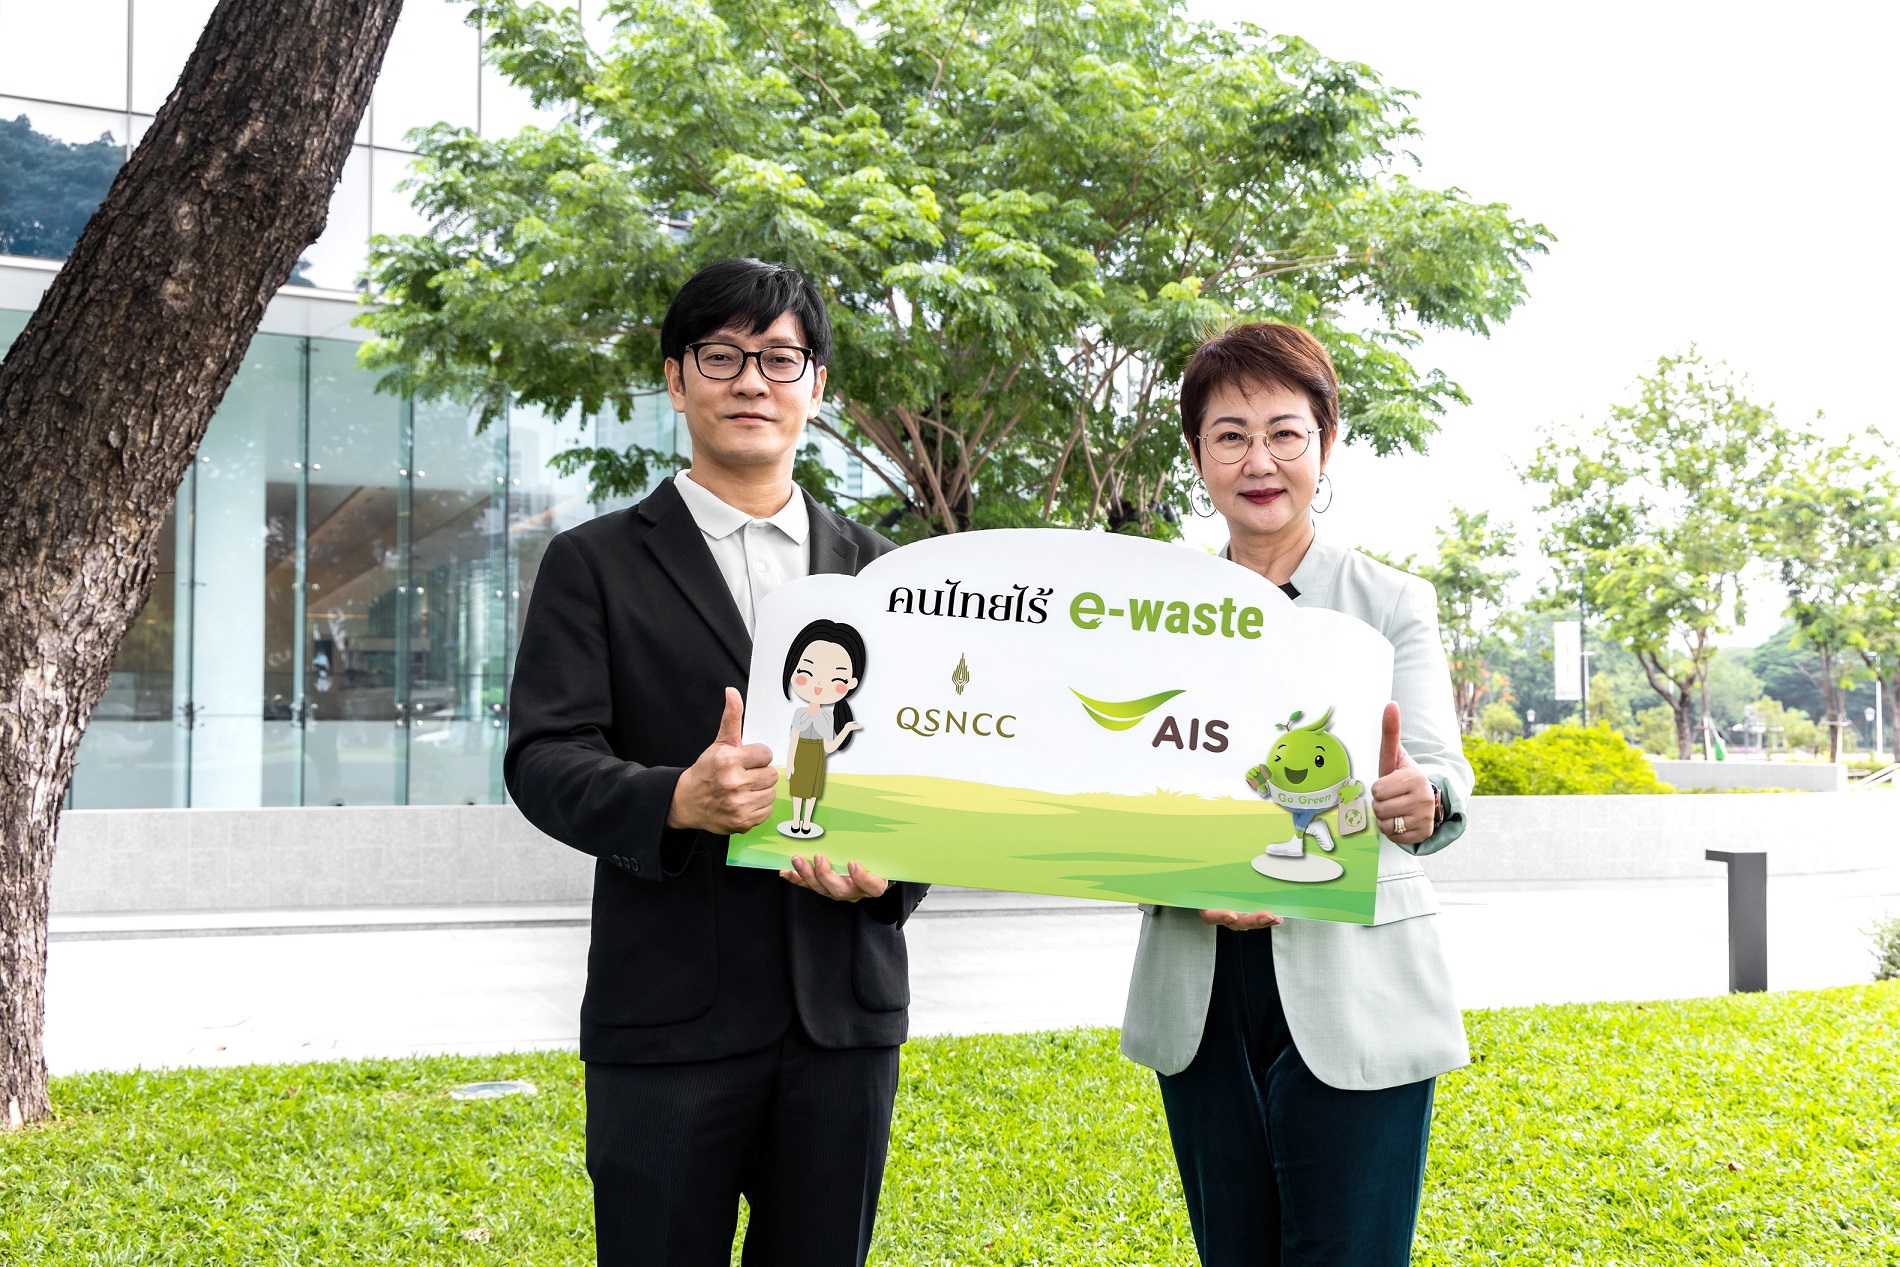 ศูนย์ฯ สิริกิติ์ ต้อนรับวันสิ่งแวดล้อมโลก ร่วมมือ เอไอเอส เข้าร่วมโครงการ คนไทย ไร้ E-Waste ตอกย้ำการเป็น “ศูนย์ฯ ประชุม สีเขียว” 